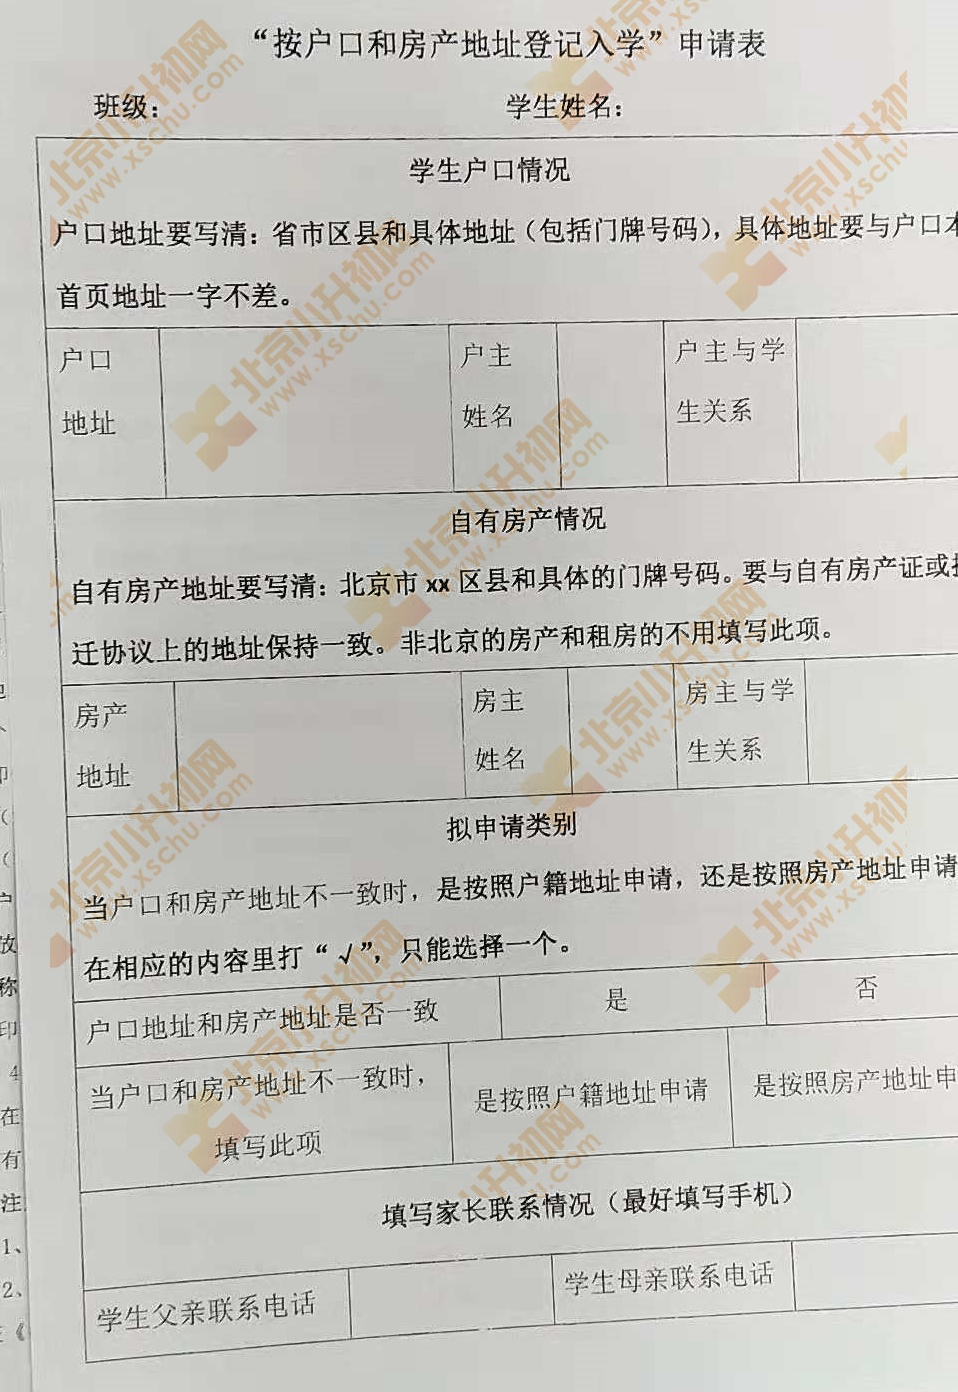 2019朝阳小升初单校划片、跨区登记入学申报材料提交要求2